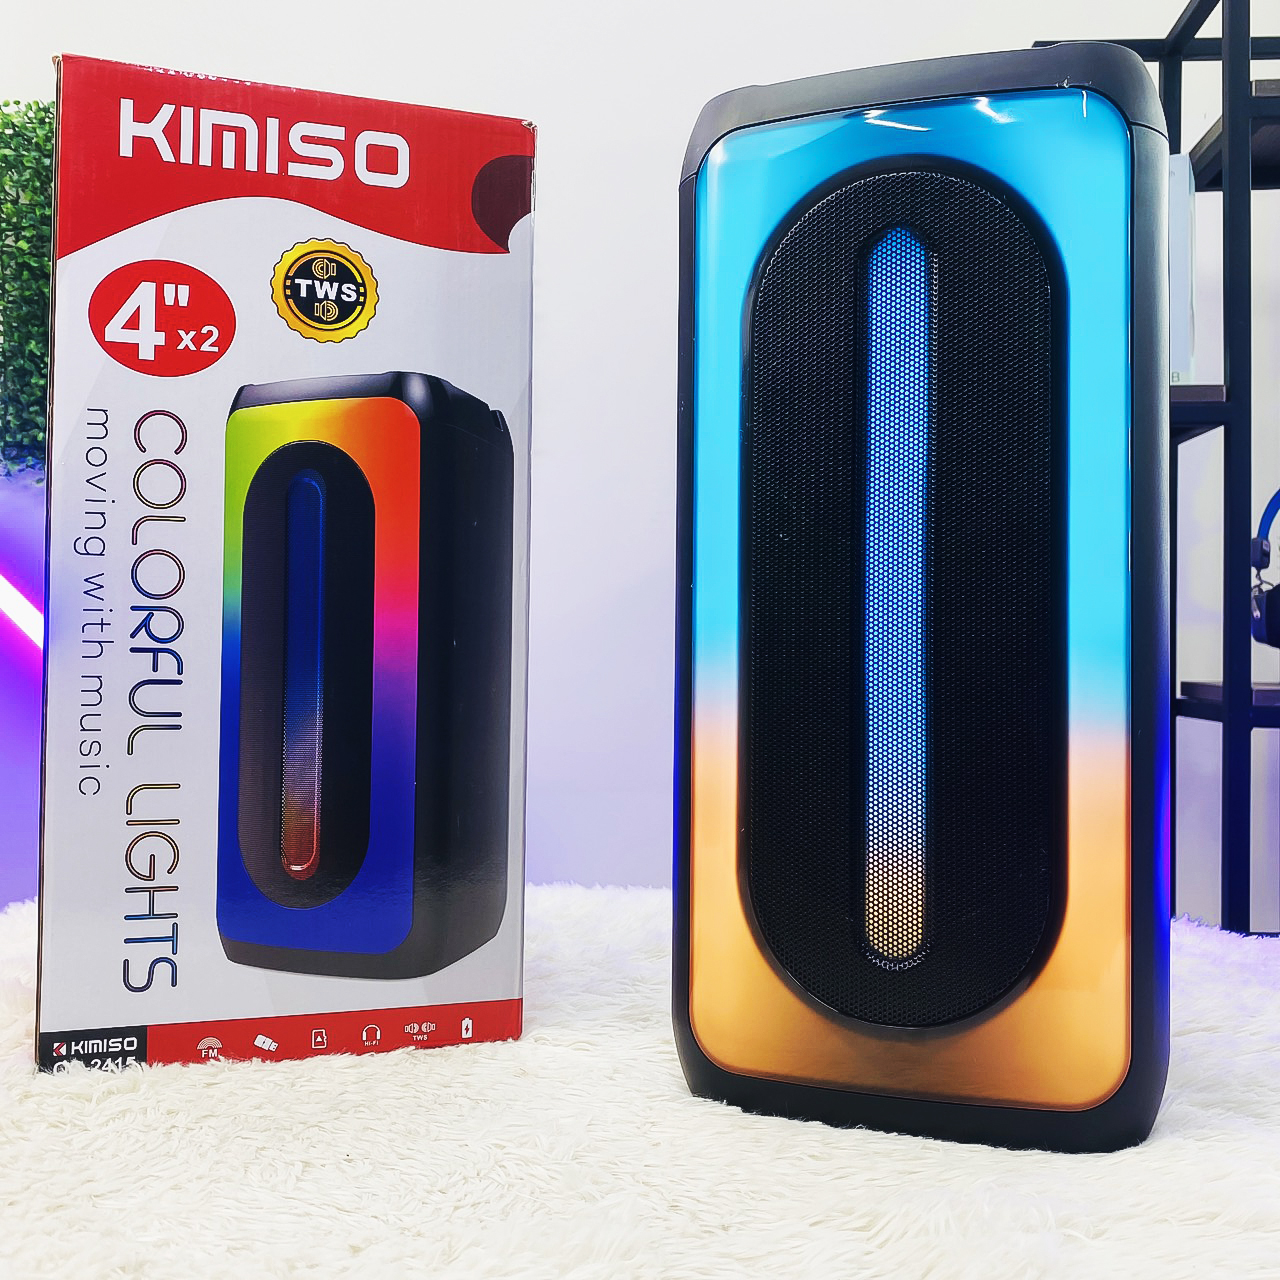 Loa bluetooth karaoke sách tay Kimiso QS-2415 đèn led sống động, bass không dây, tặng kèm mic hát có dây cắm trực tiếp - hàng nhập khẩu